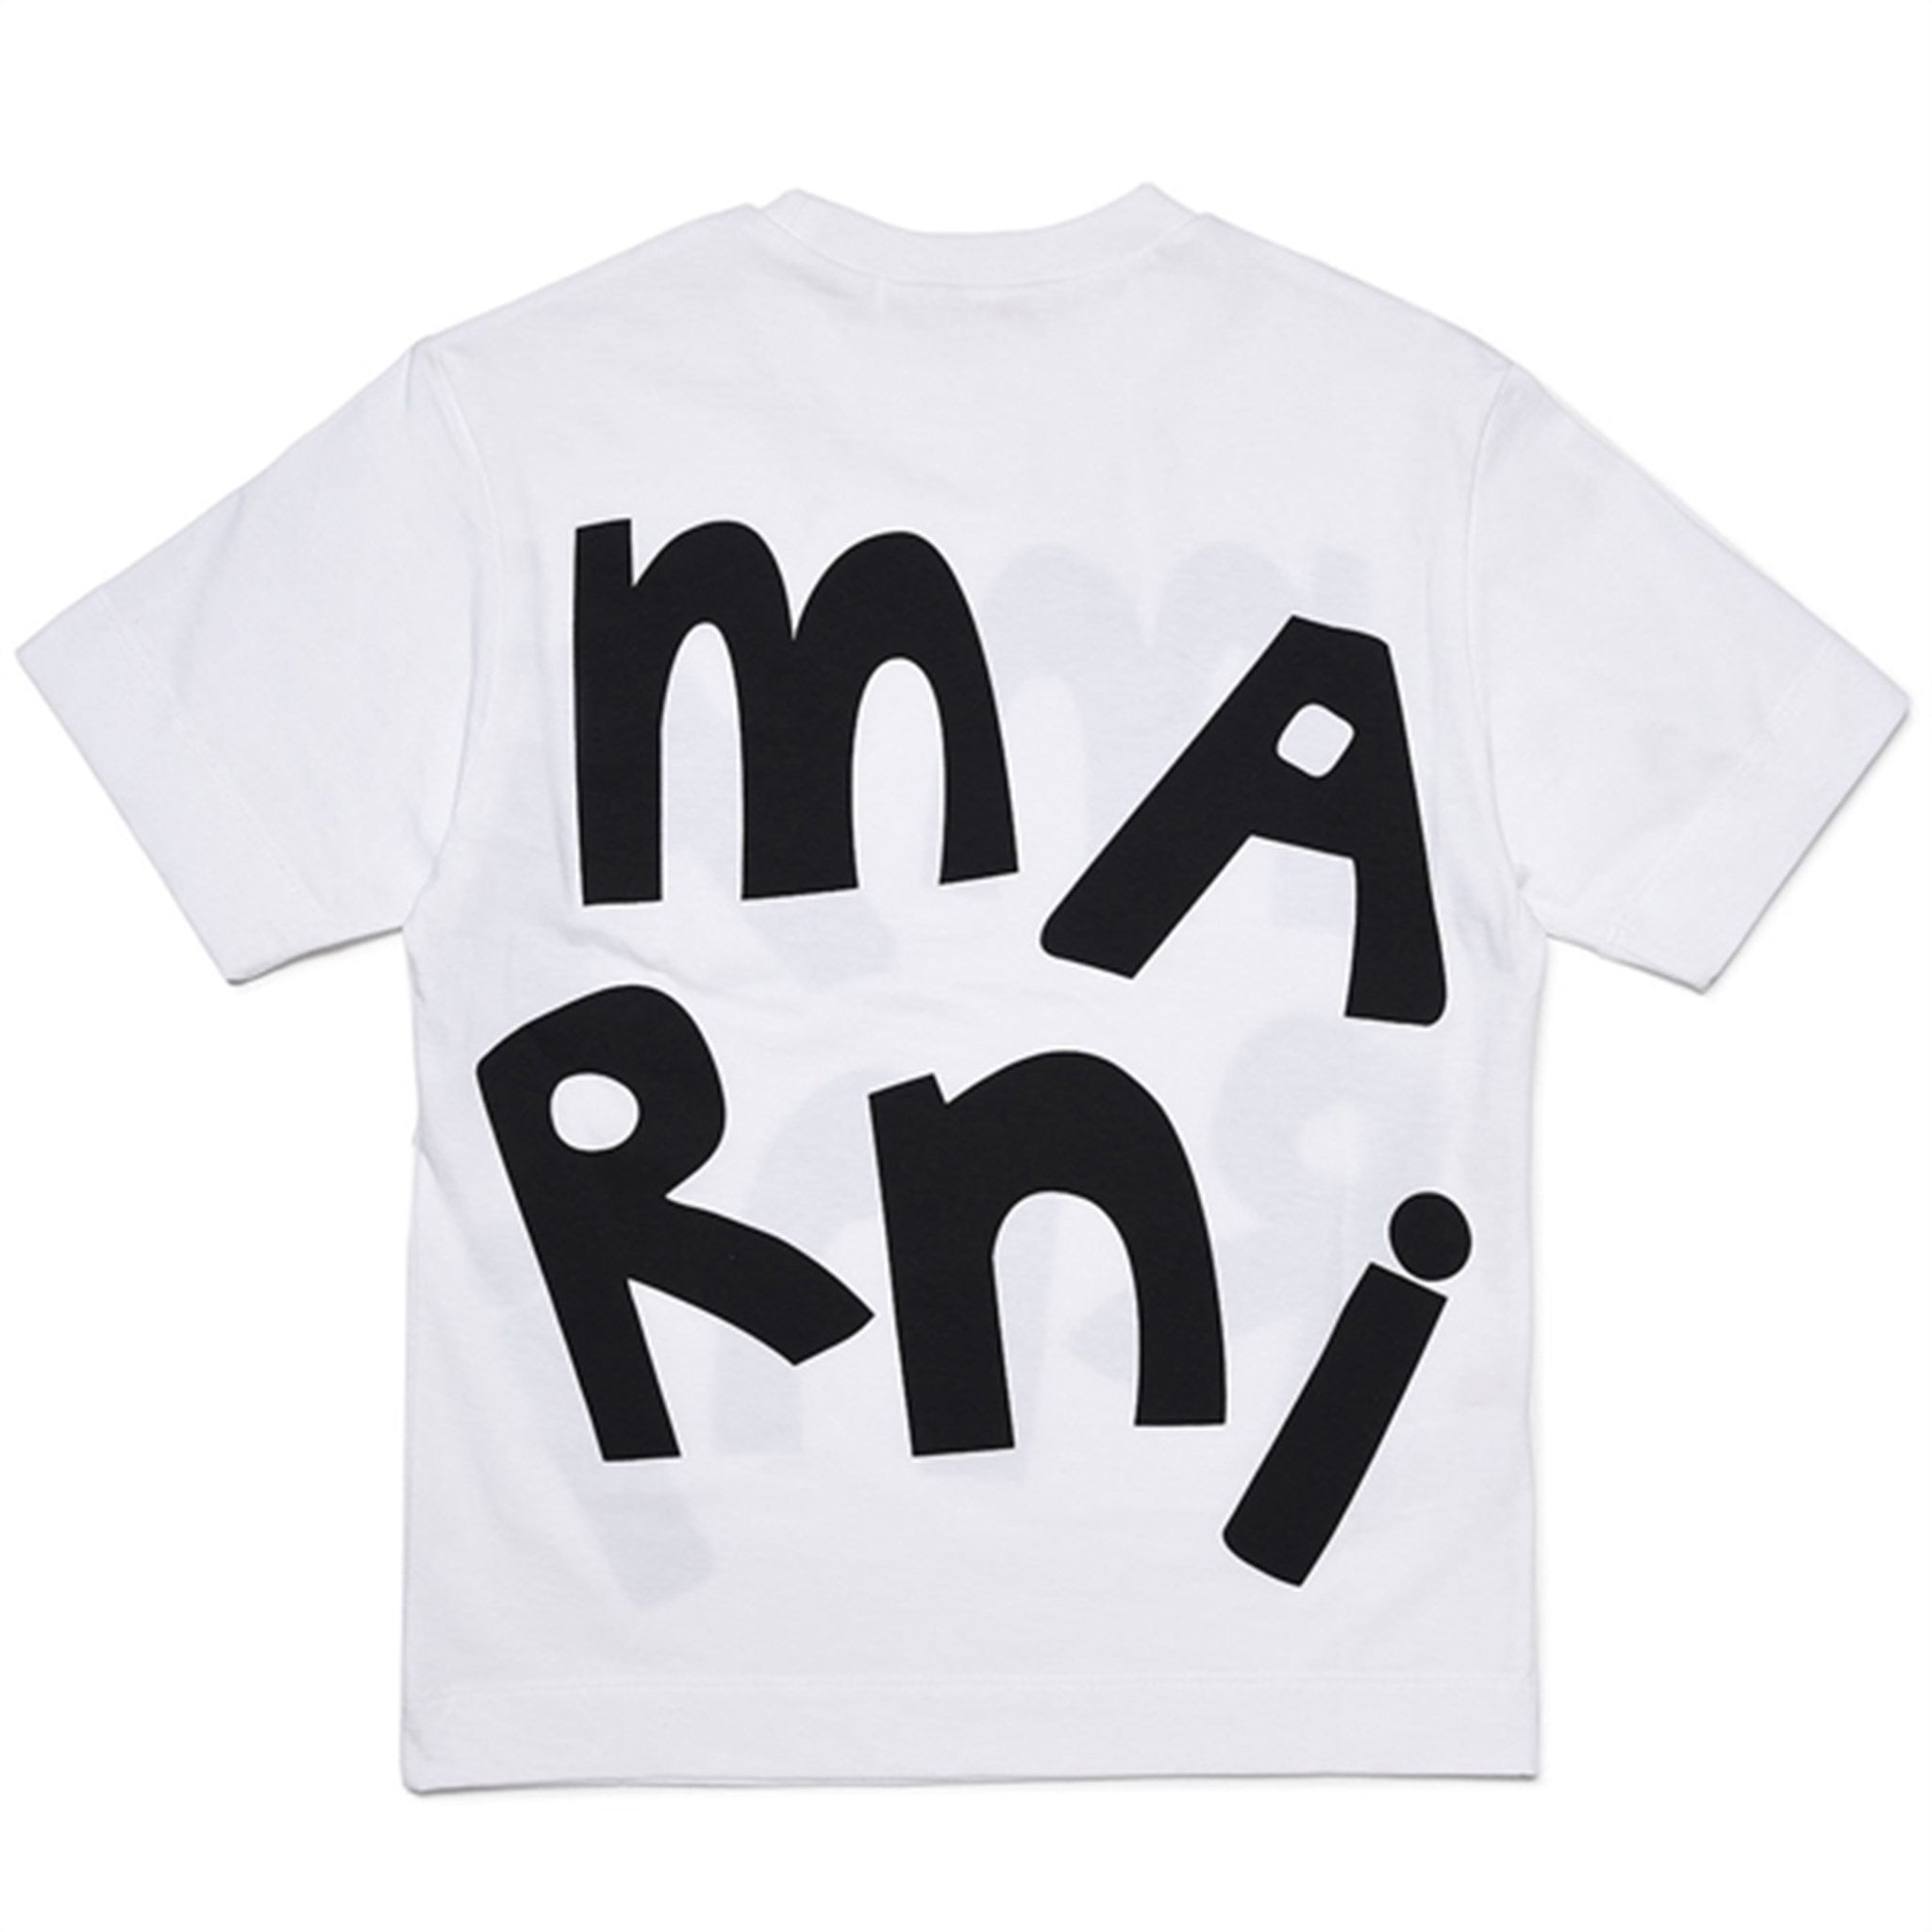 Marni White T-shirt 2